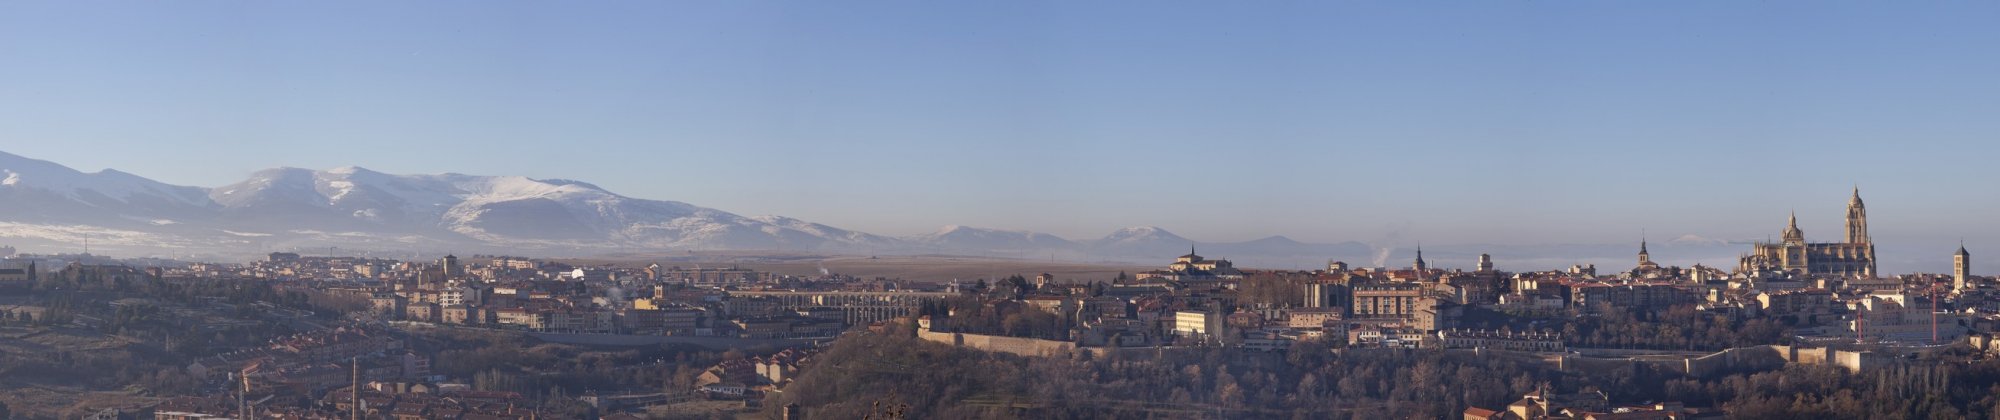 Parador de Segovia vistas de la ciudad